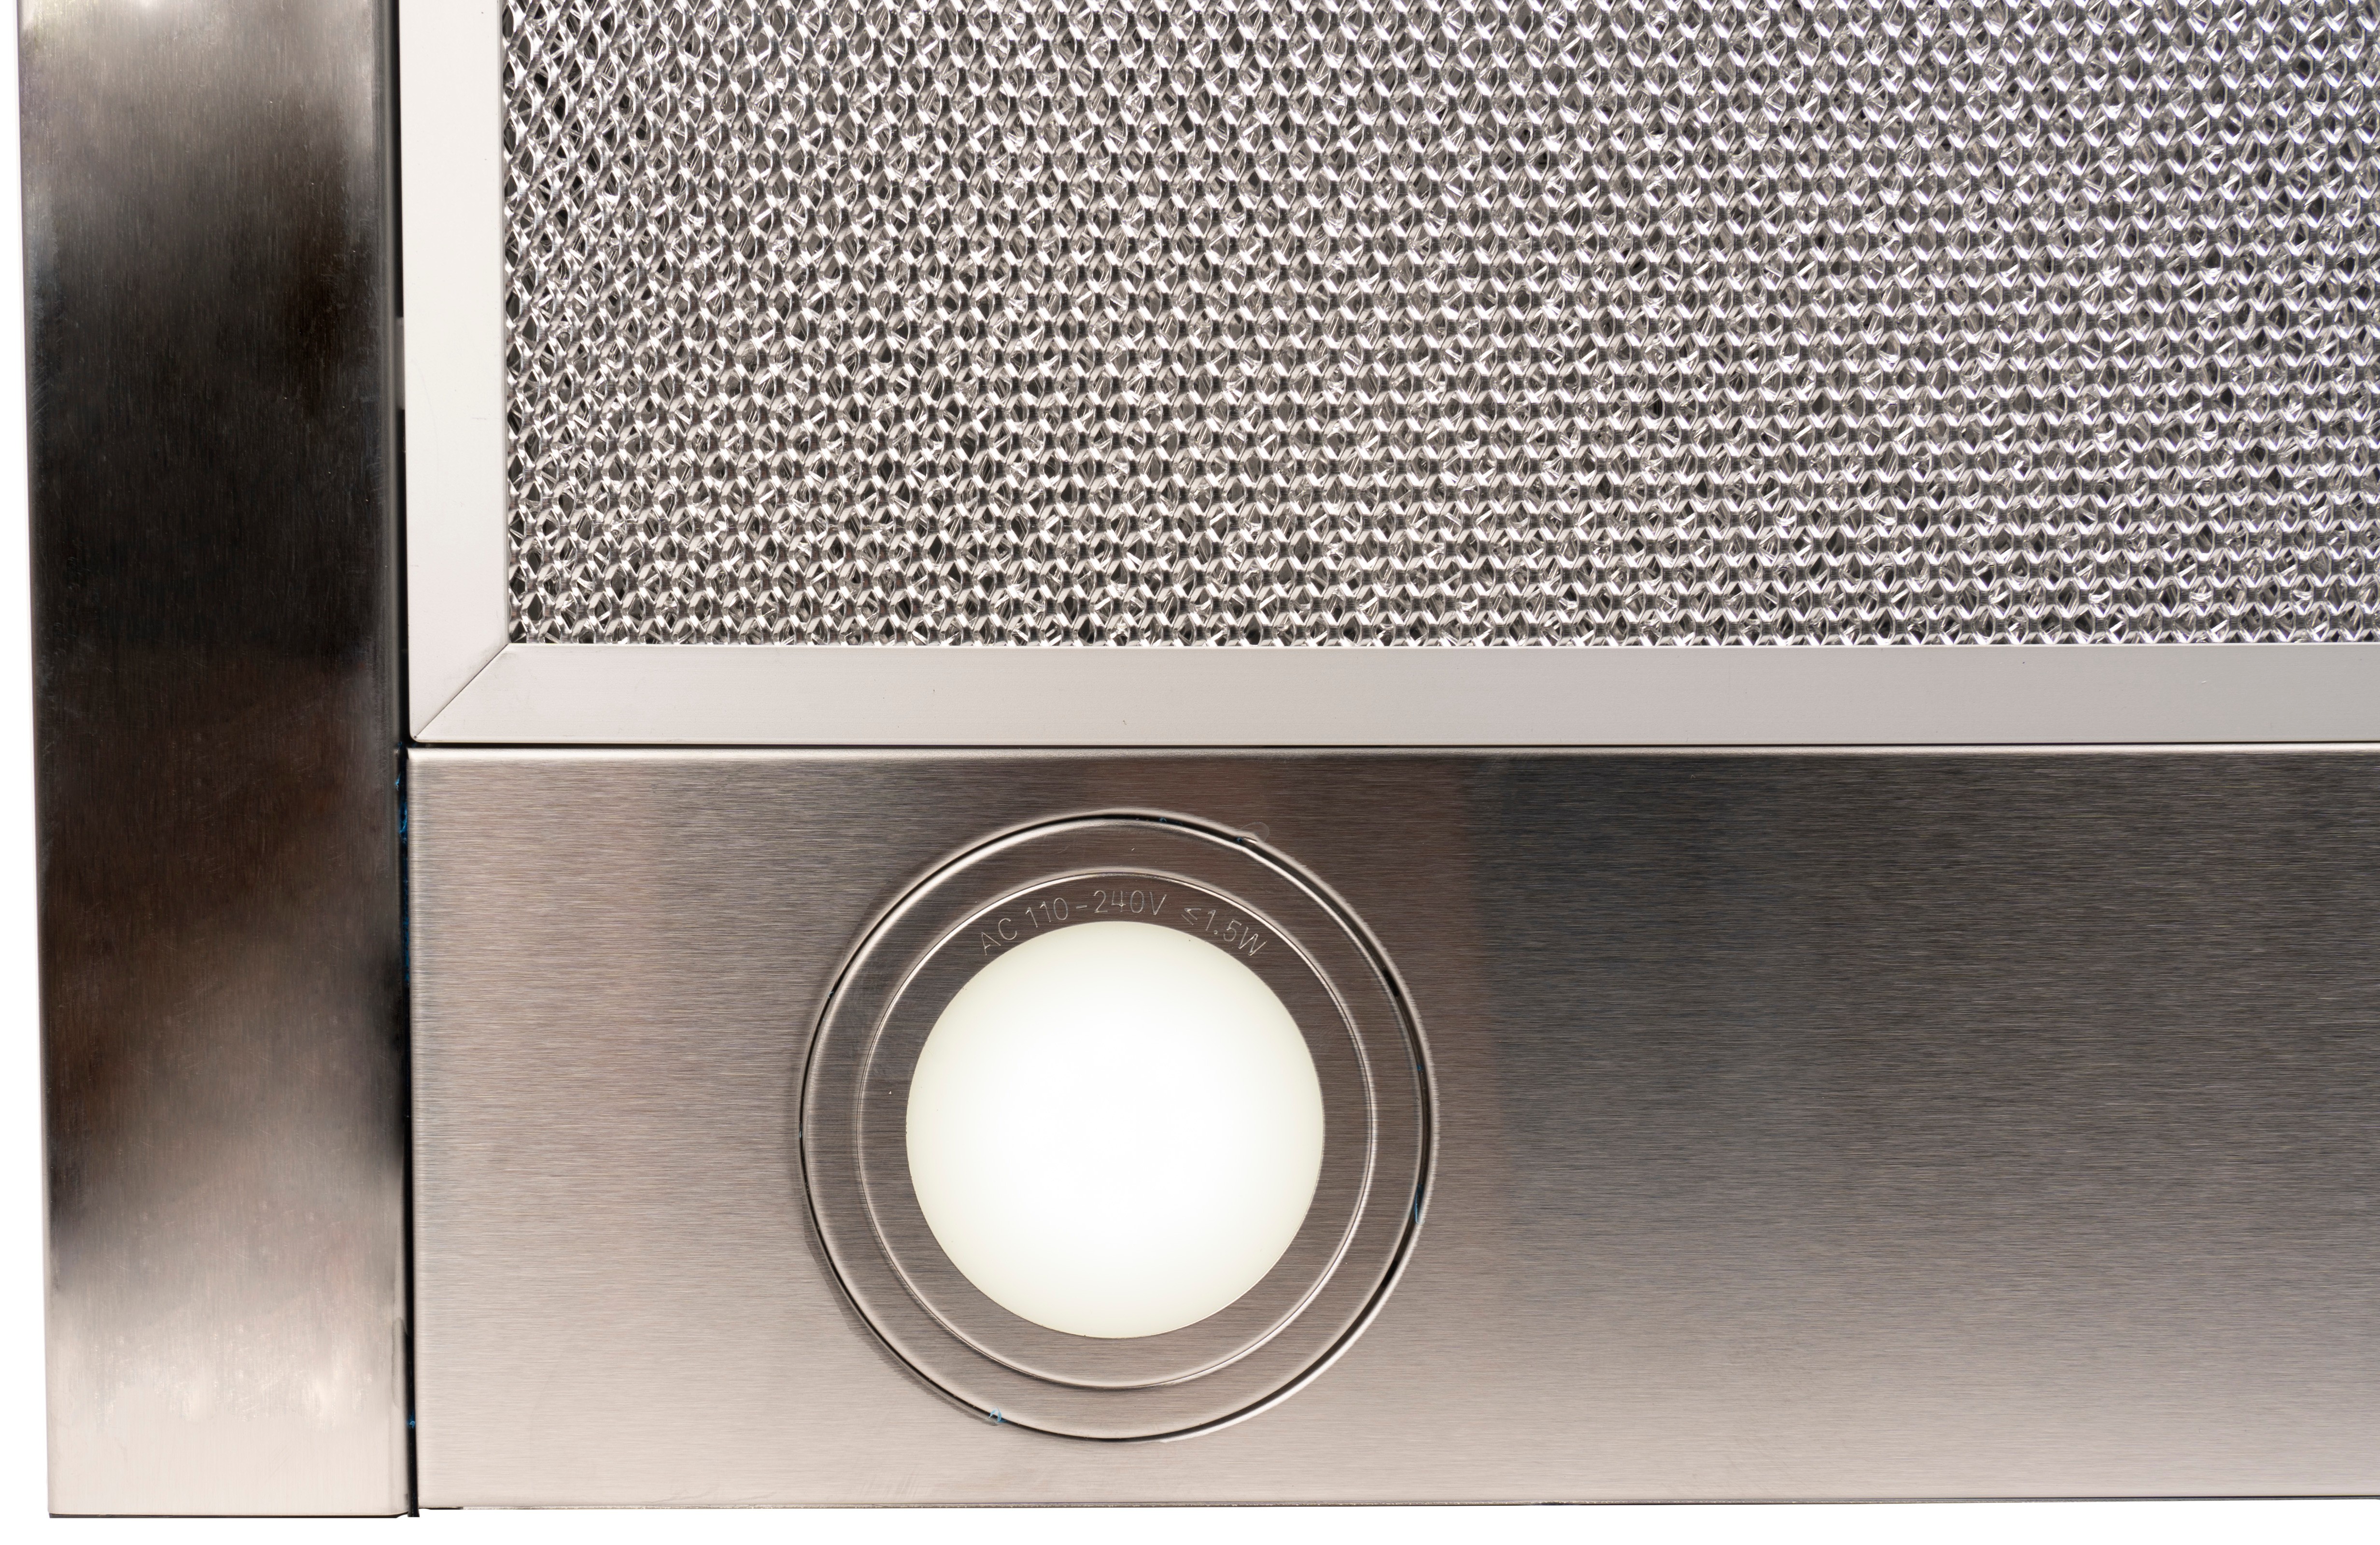 Кухонная вытяжка Ventolux GARDA 50 INOX (700) LED отзывы - изображения 5